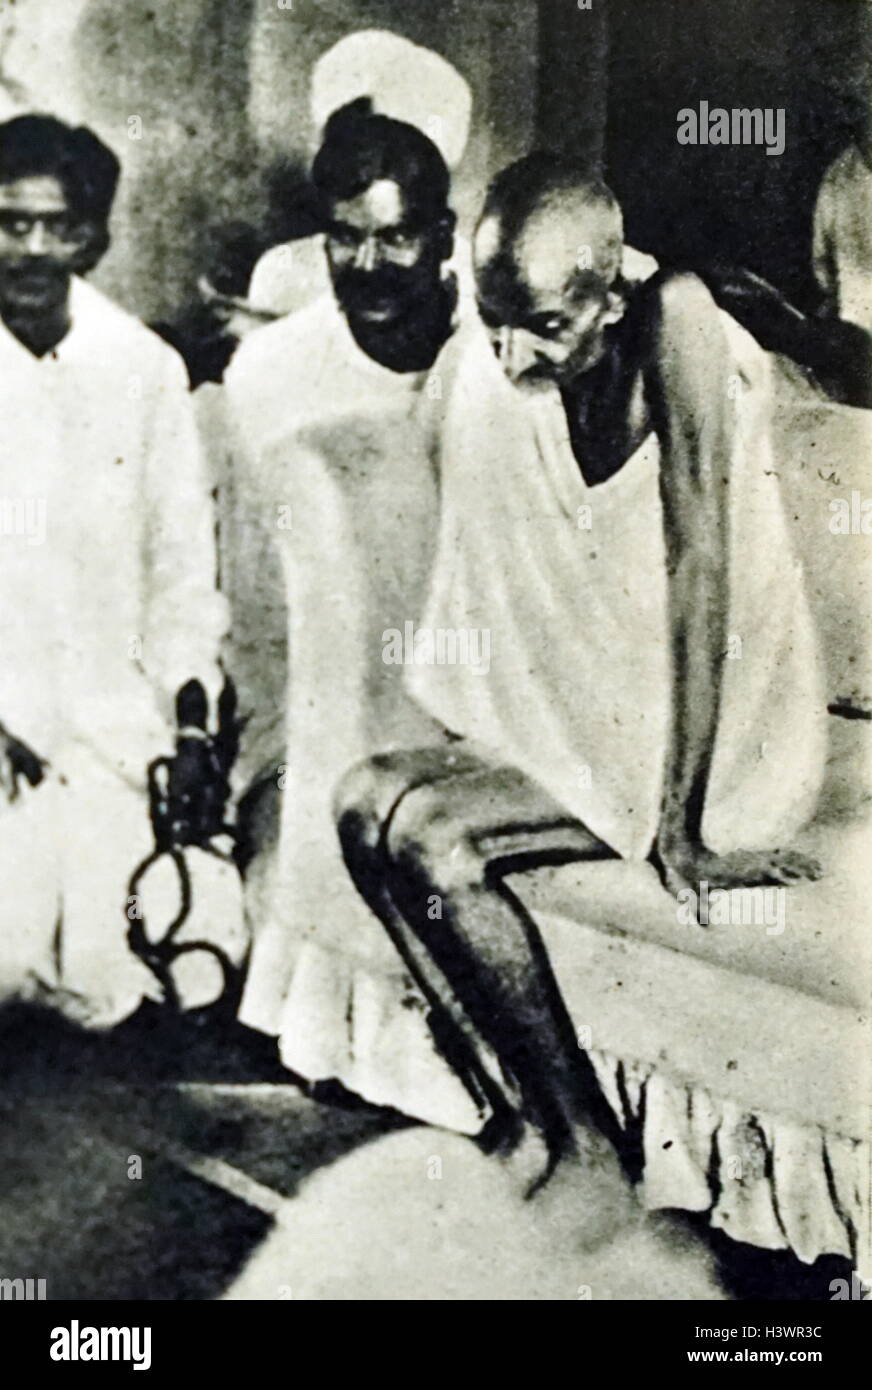 Foto einer Ausgemergelten Mahatma Gandhi (1869-1948) Die herausragende Führer der indischen Unabhängigkeitsbewegung in Britisch - Indien regiert. Vom 20. Jahrhundert Stockfoto